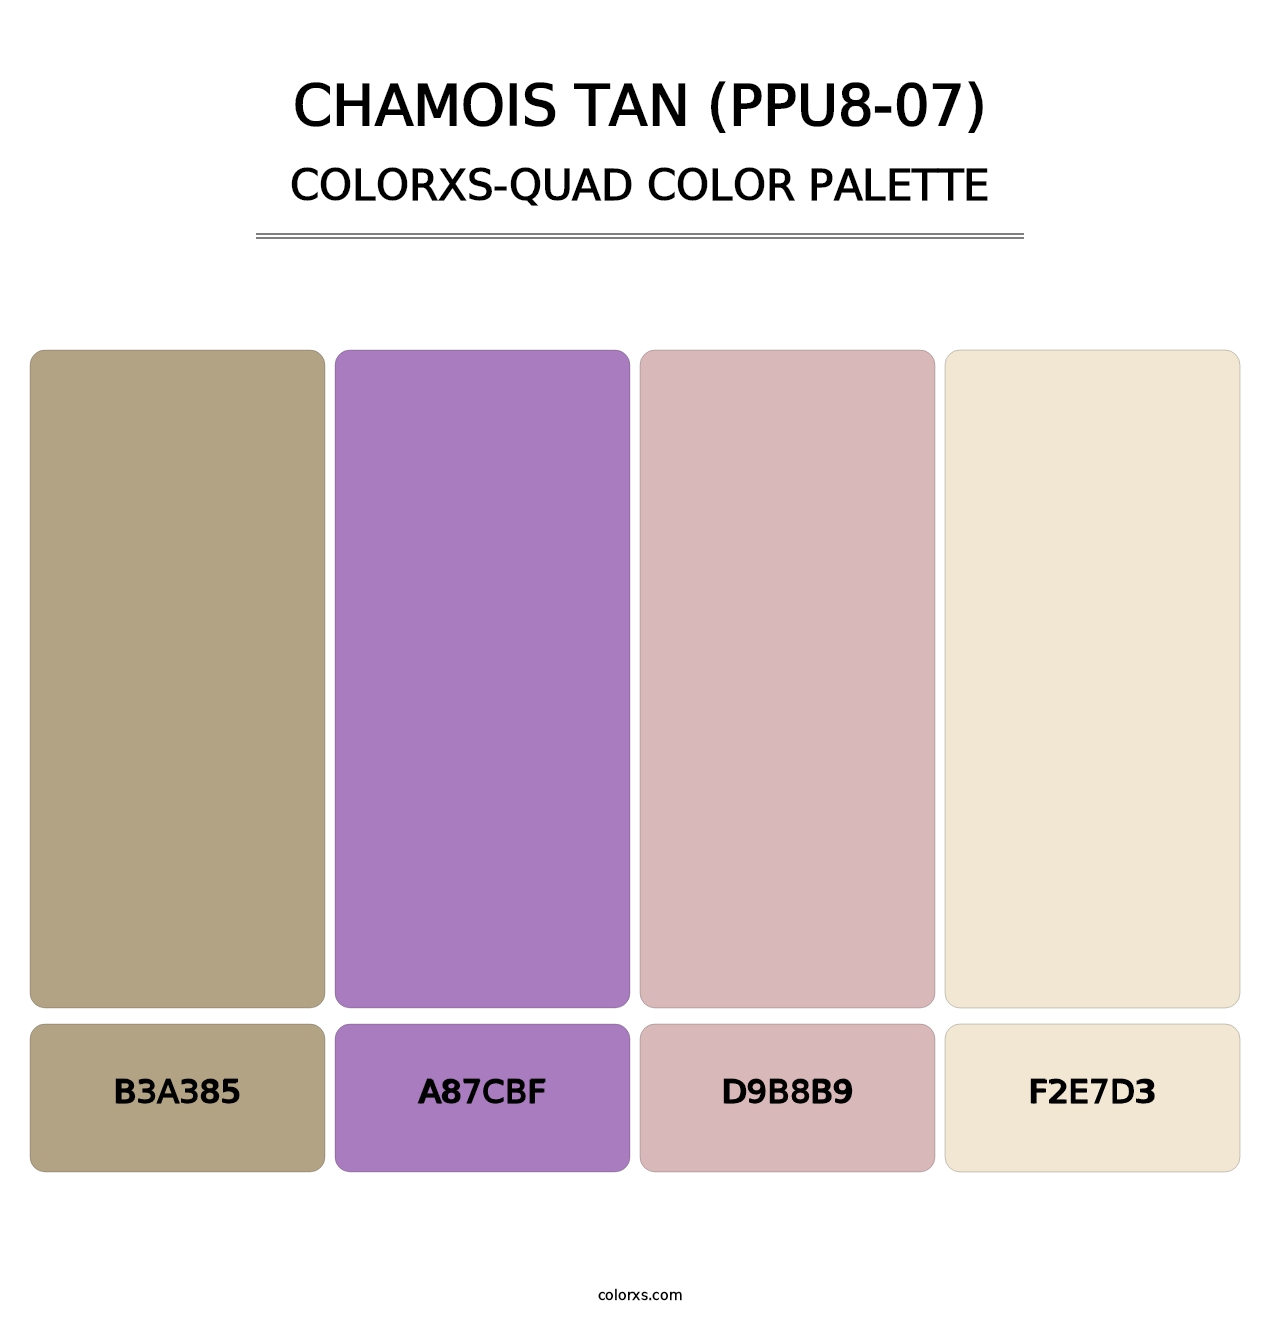 Chamois Tan (PPU8-07) - Colorxs Quad Palette